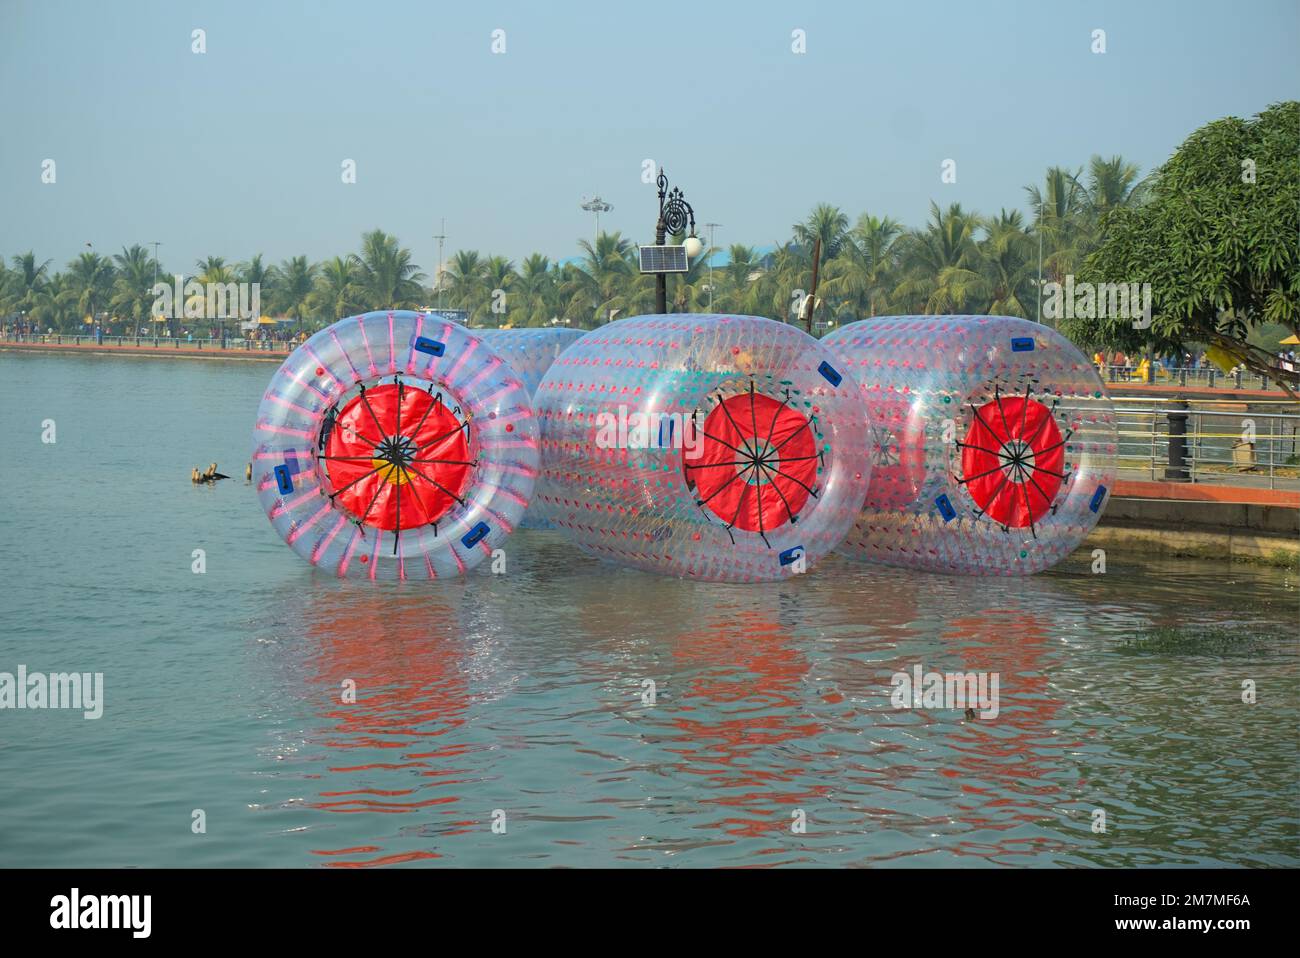 Floating water walking balloons or zorbing ballons on lake water. Stock Photo